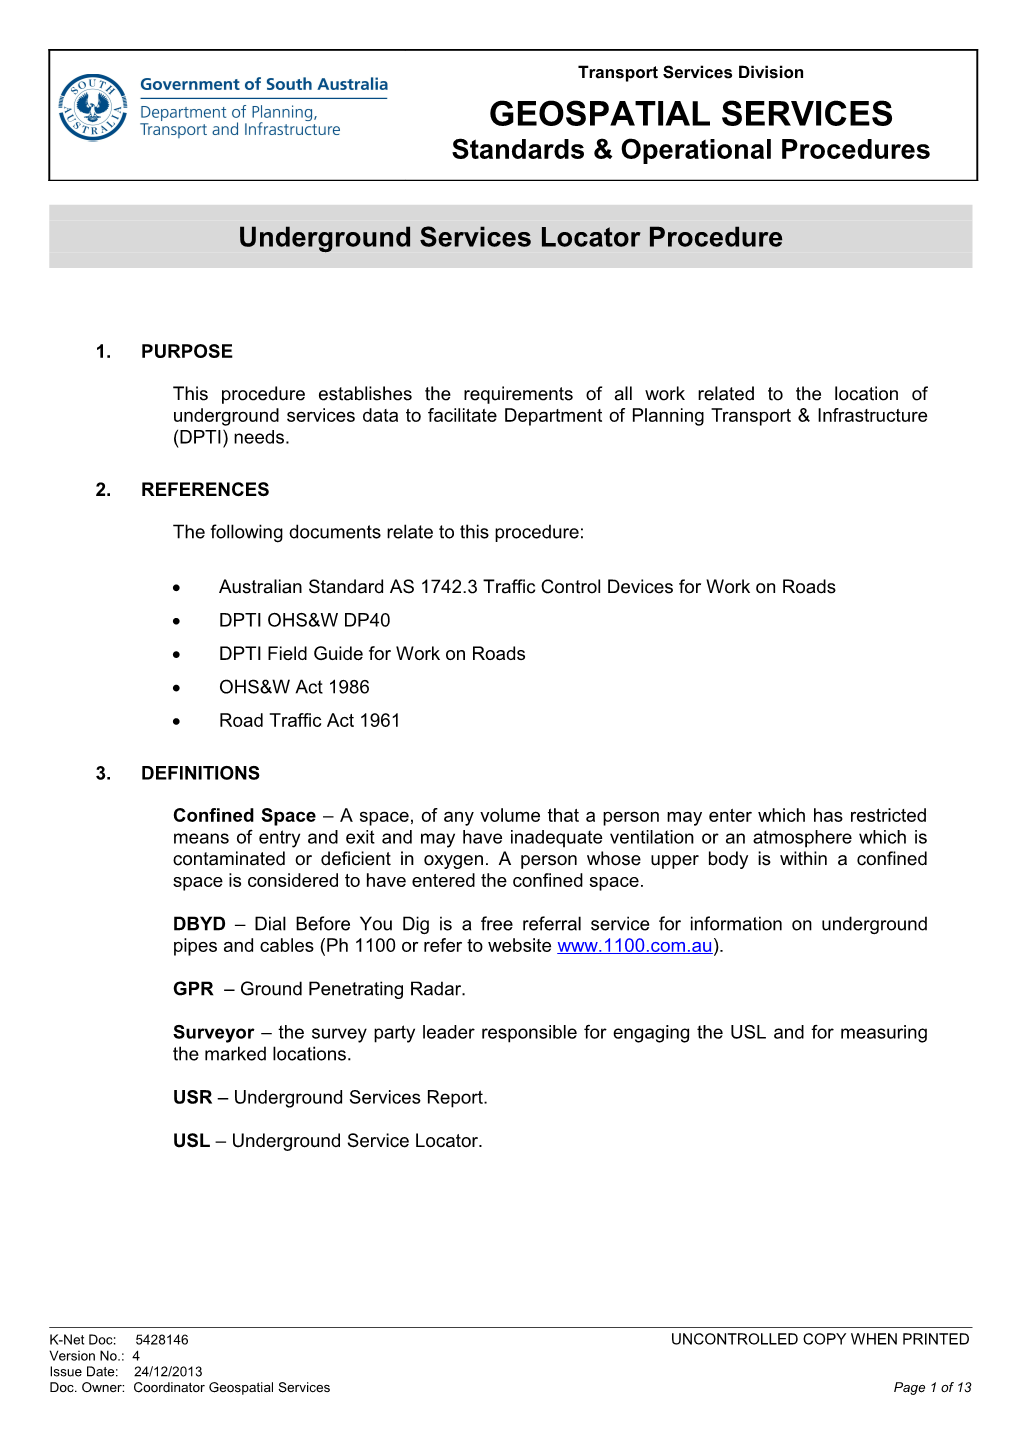 Underground Services Locator Standard